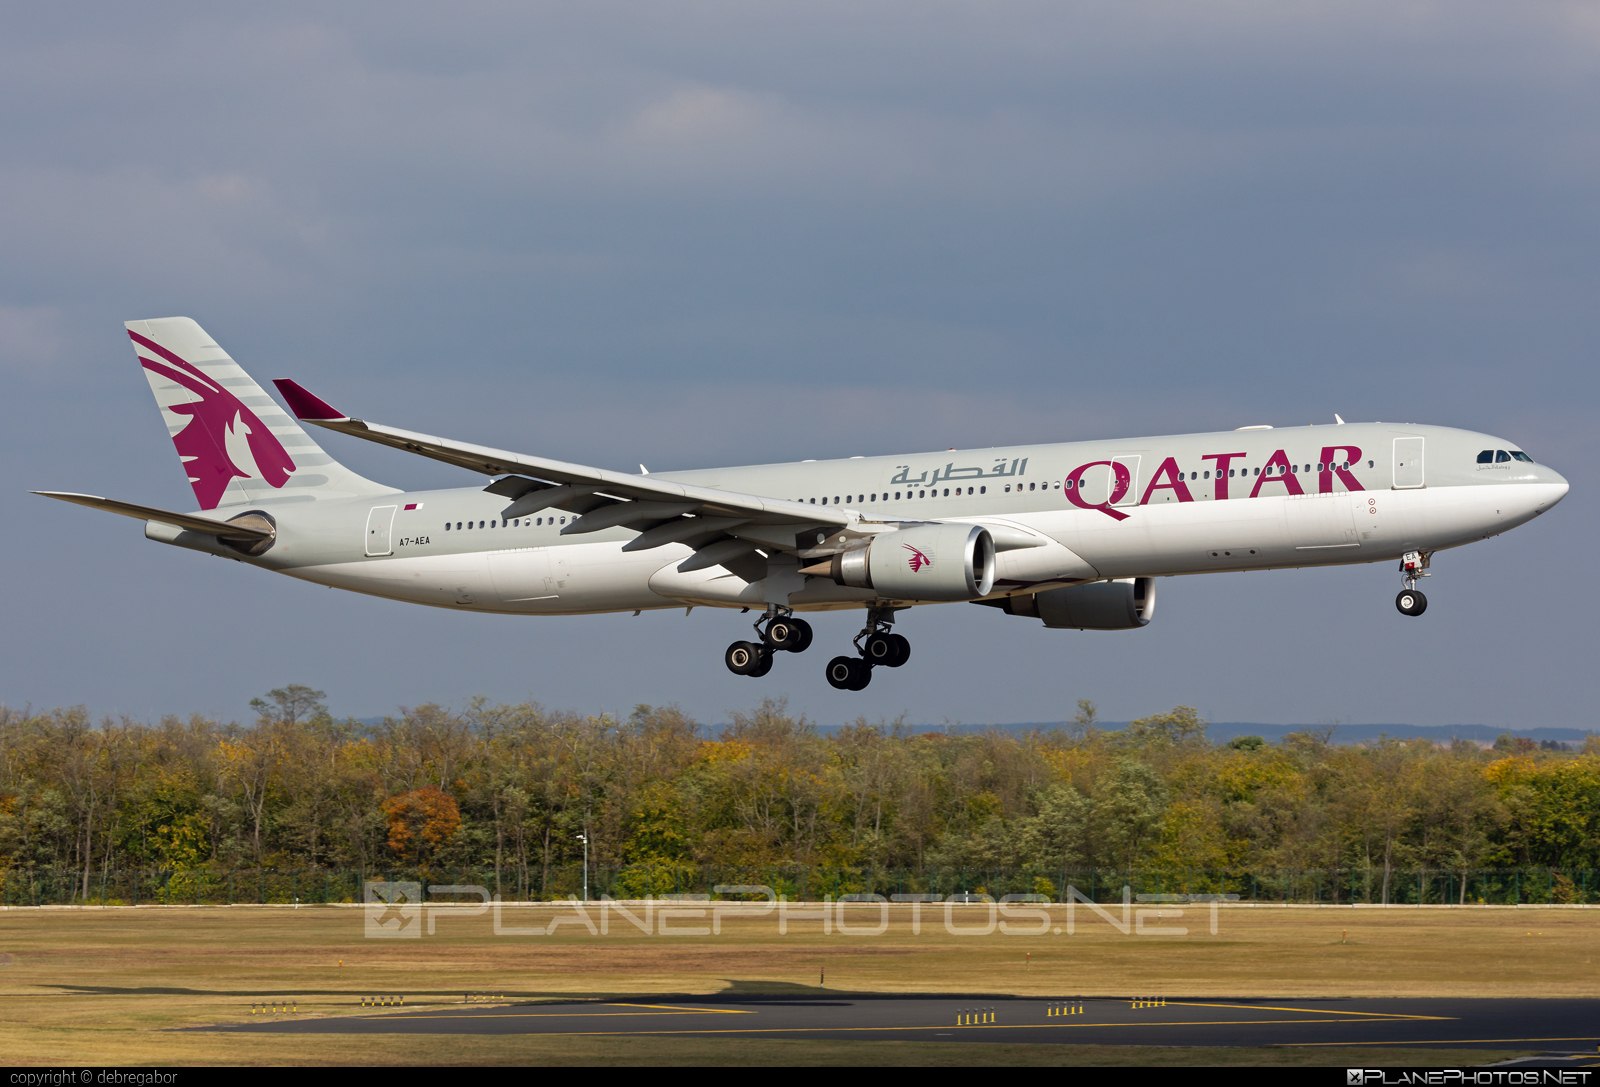 Airbus A330-303 - A7-AEA operated by Qatar Airways #a330 #a330family #airbus #airbus330 #qatarairways